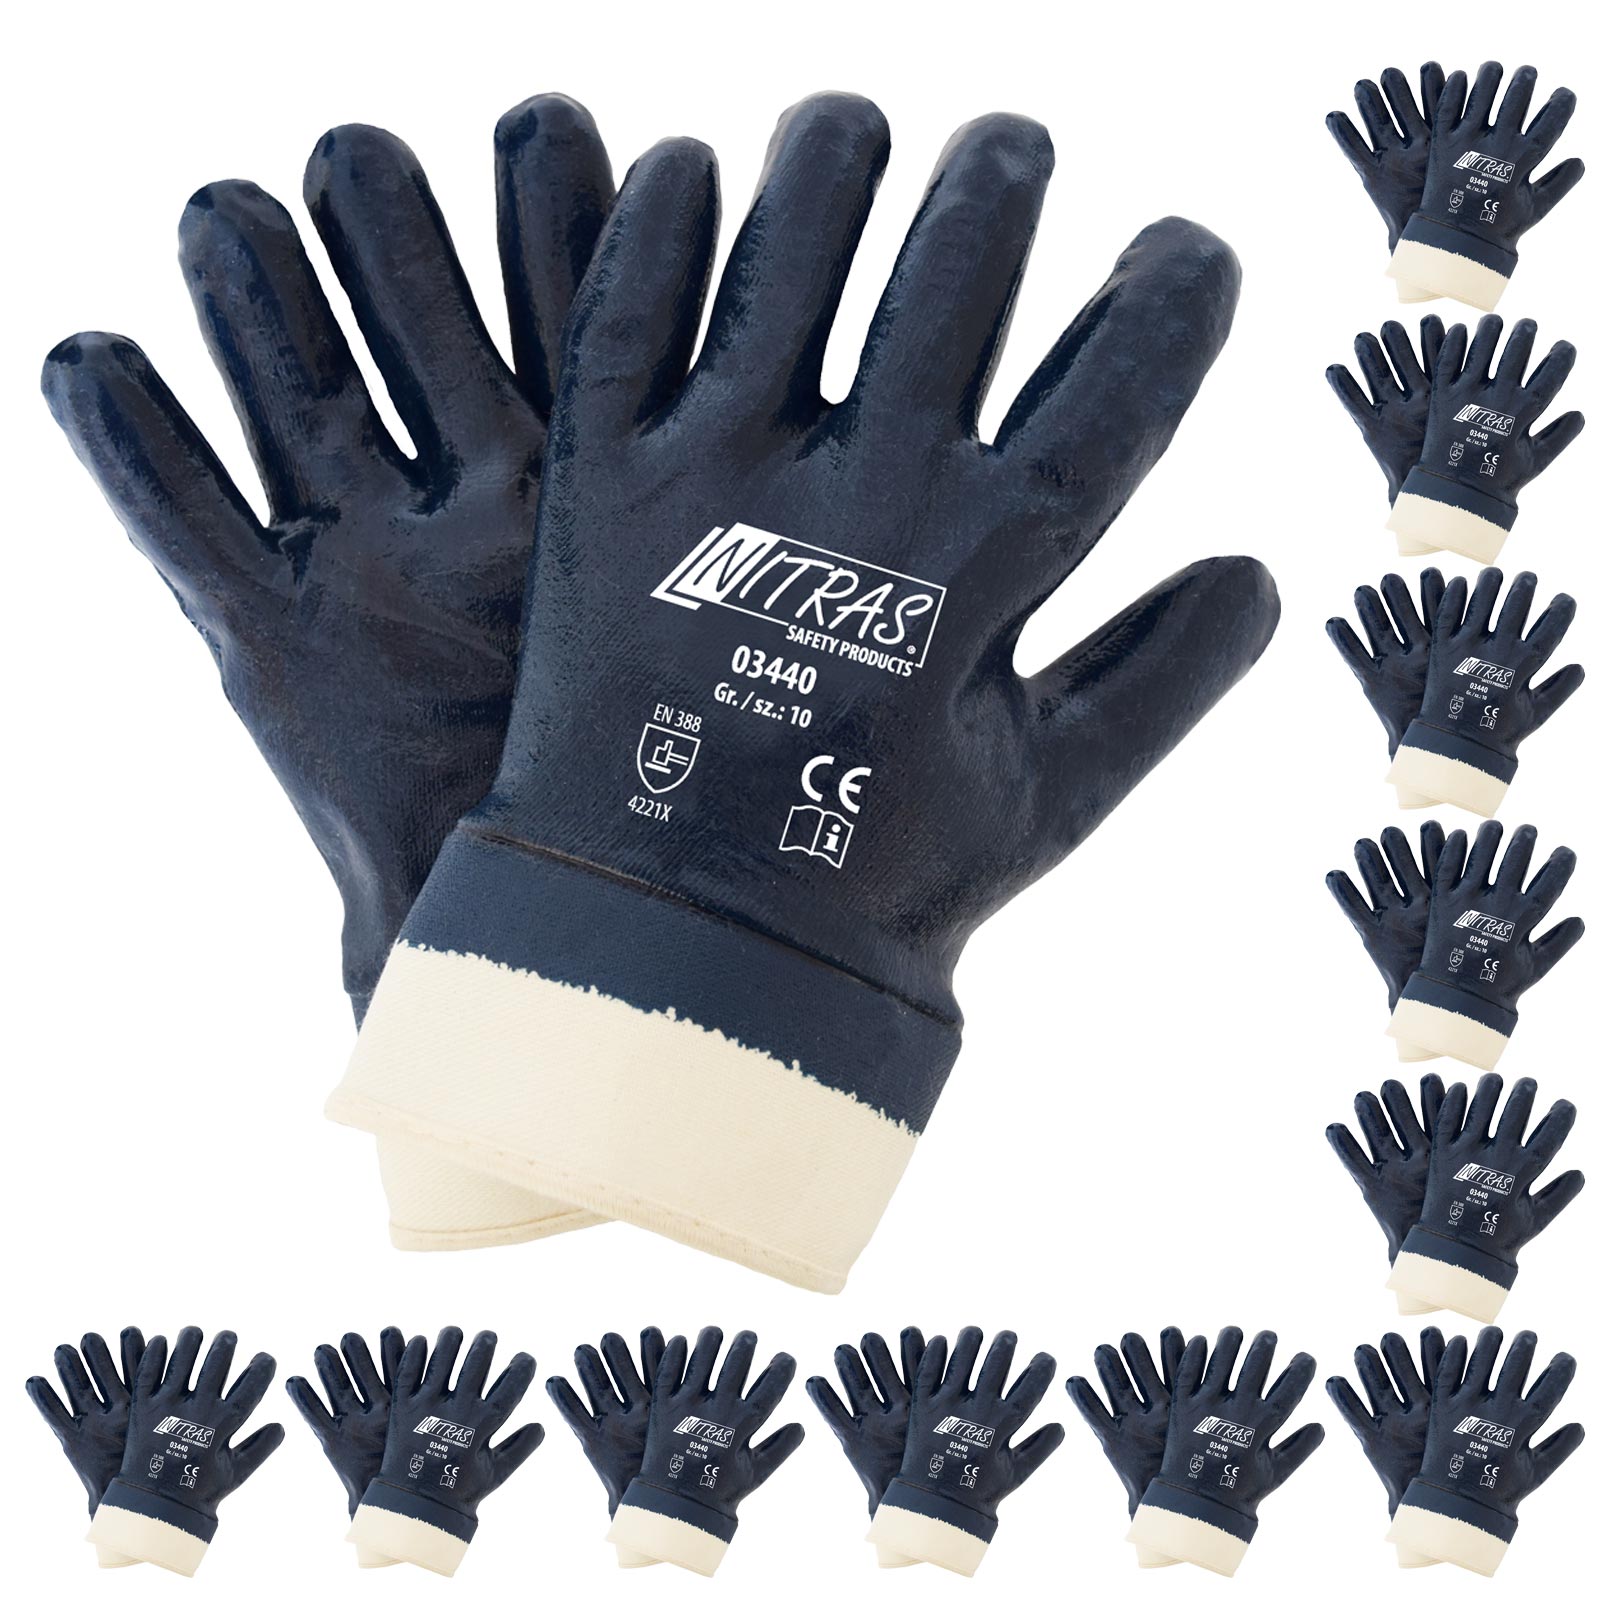 NITRAS 03440 Nitrilhandschuhe Arbeitshandschuhe Handschuhe mit Stulpe - 12 Paar Größe:9 von NITRAS